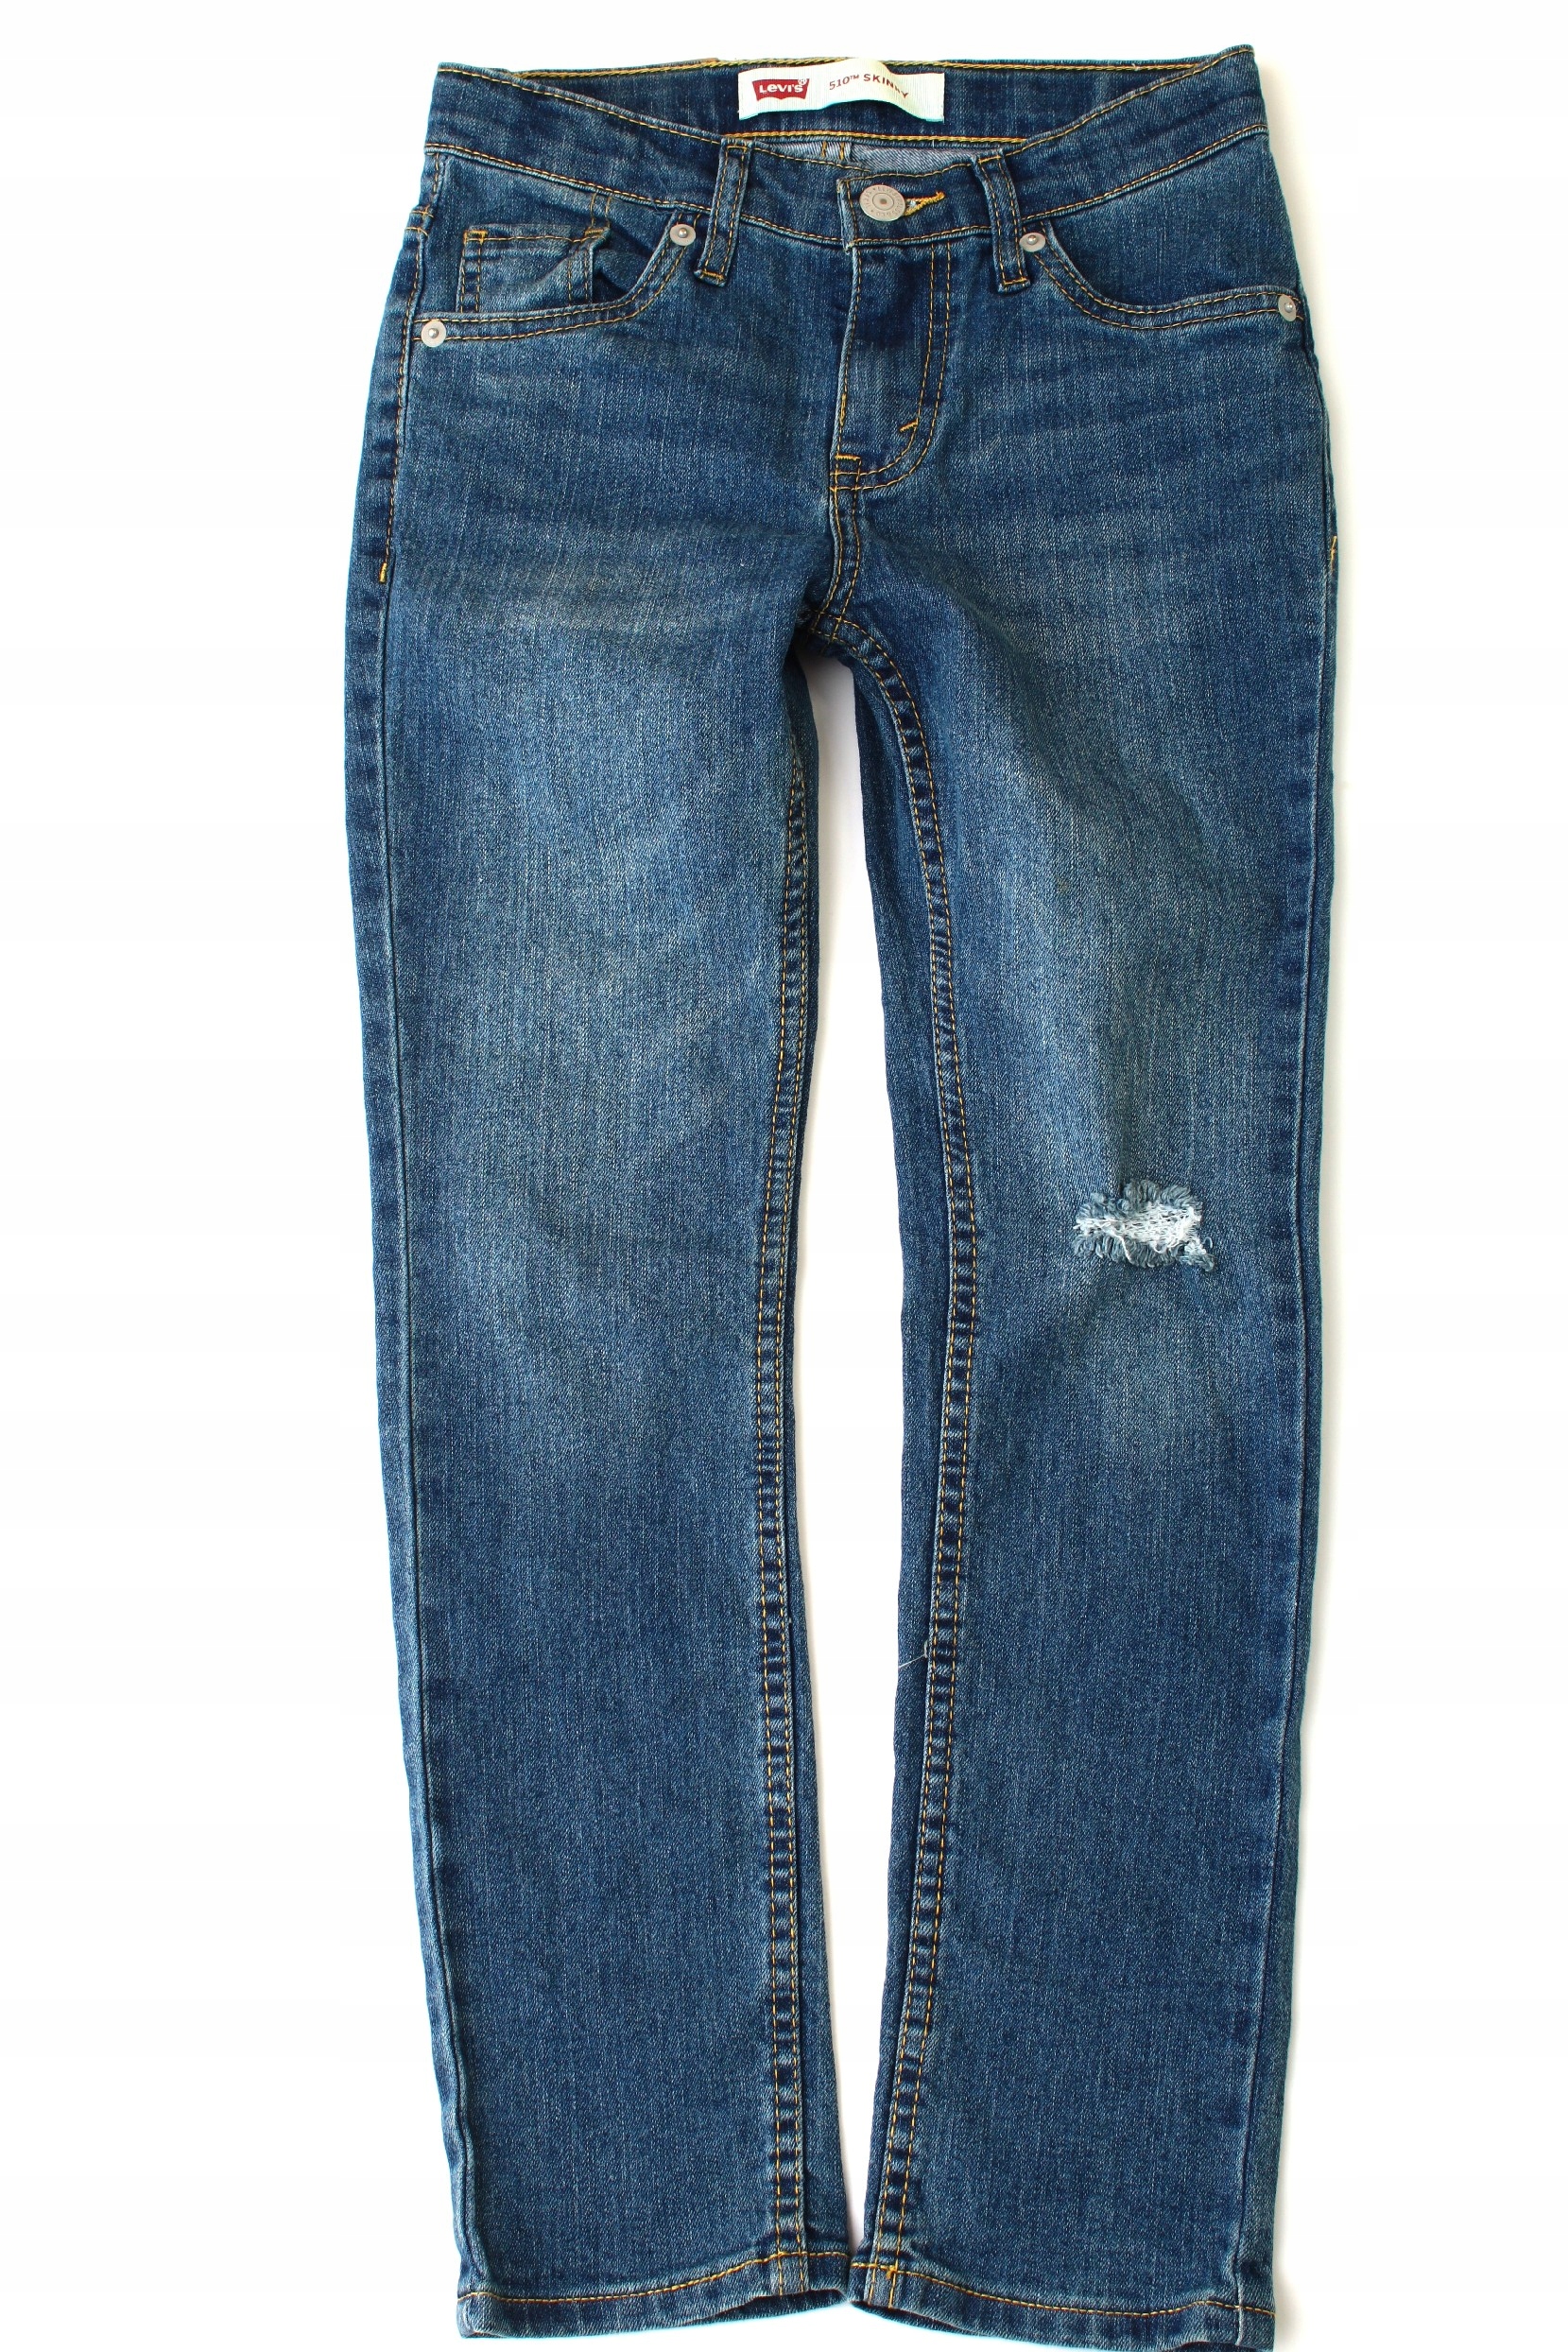 LEVIS 510 TM SKINNY Spodnie jeans r. 8 lat 128 cm 13106299087 